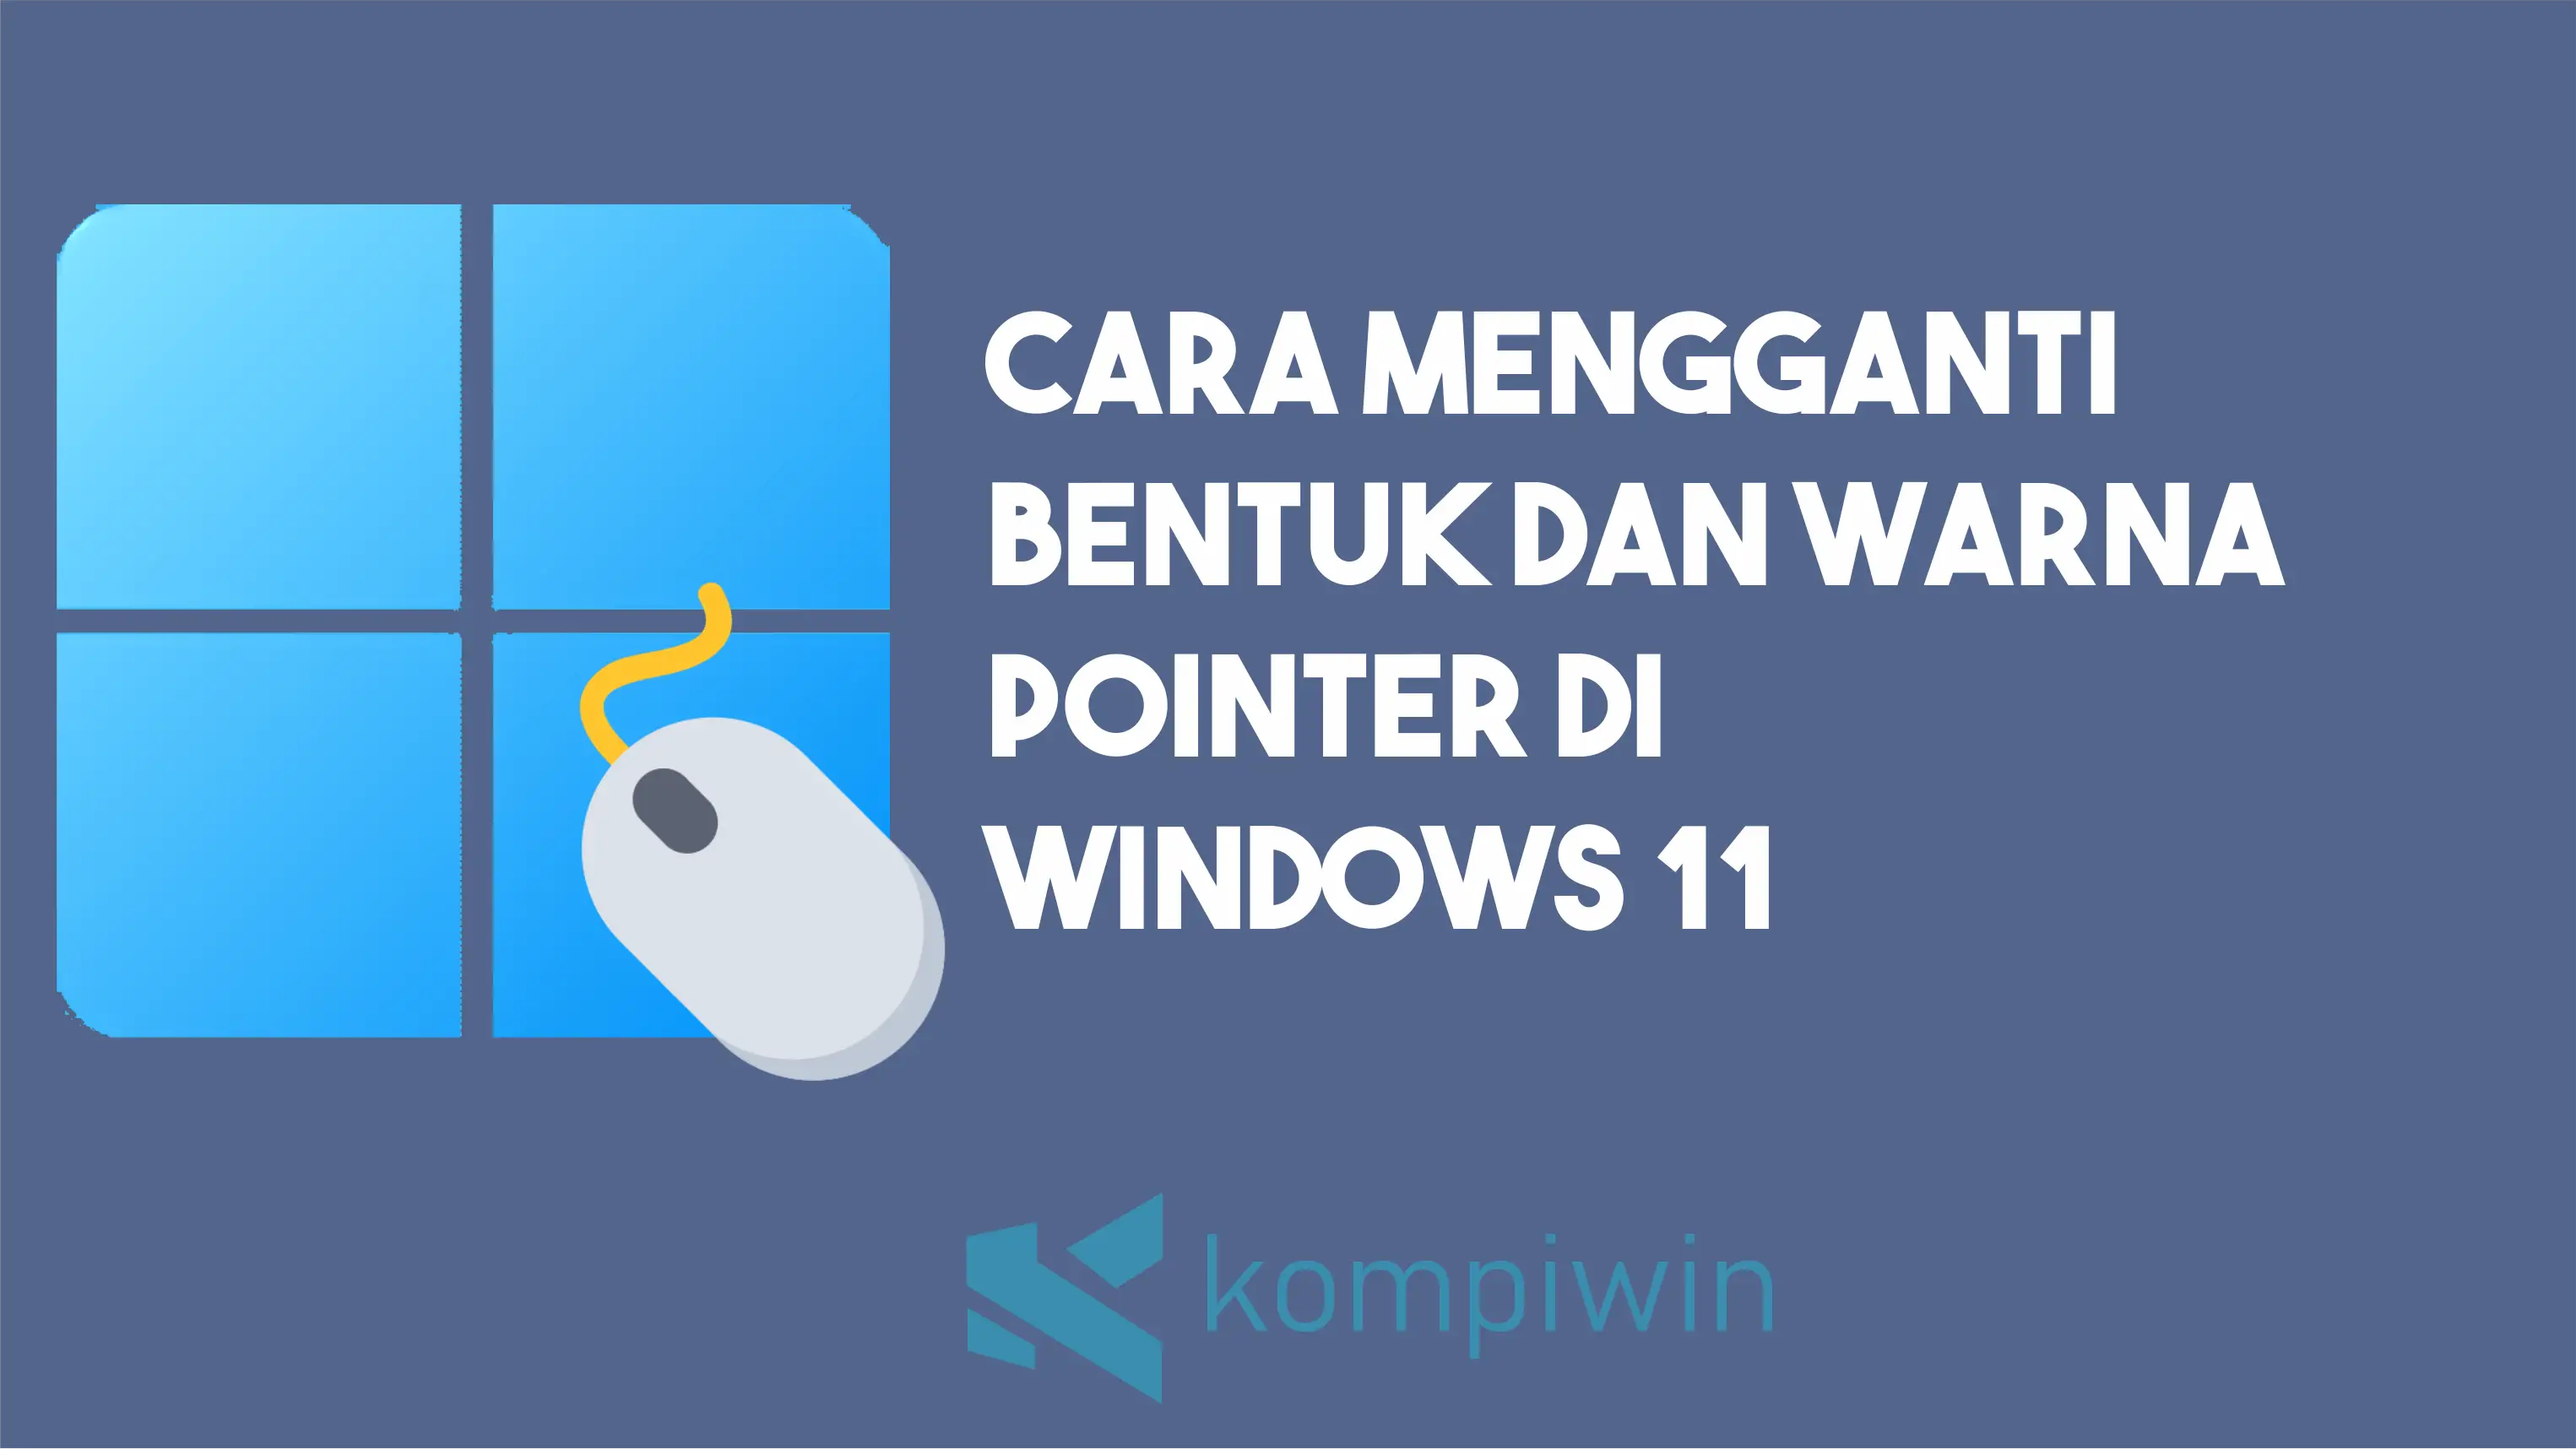 Cara Mengganti Bentuk dan Warna Pointer di Windows 11